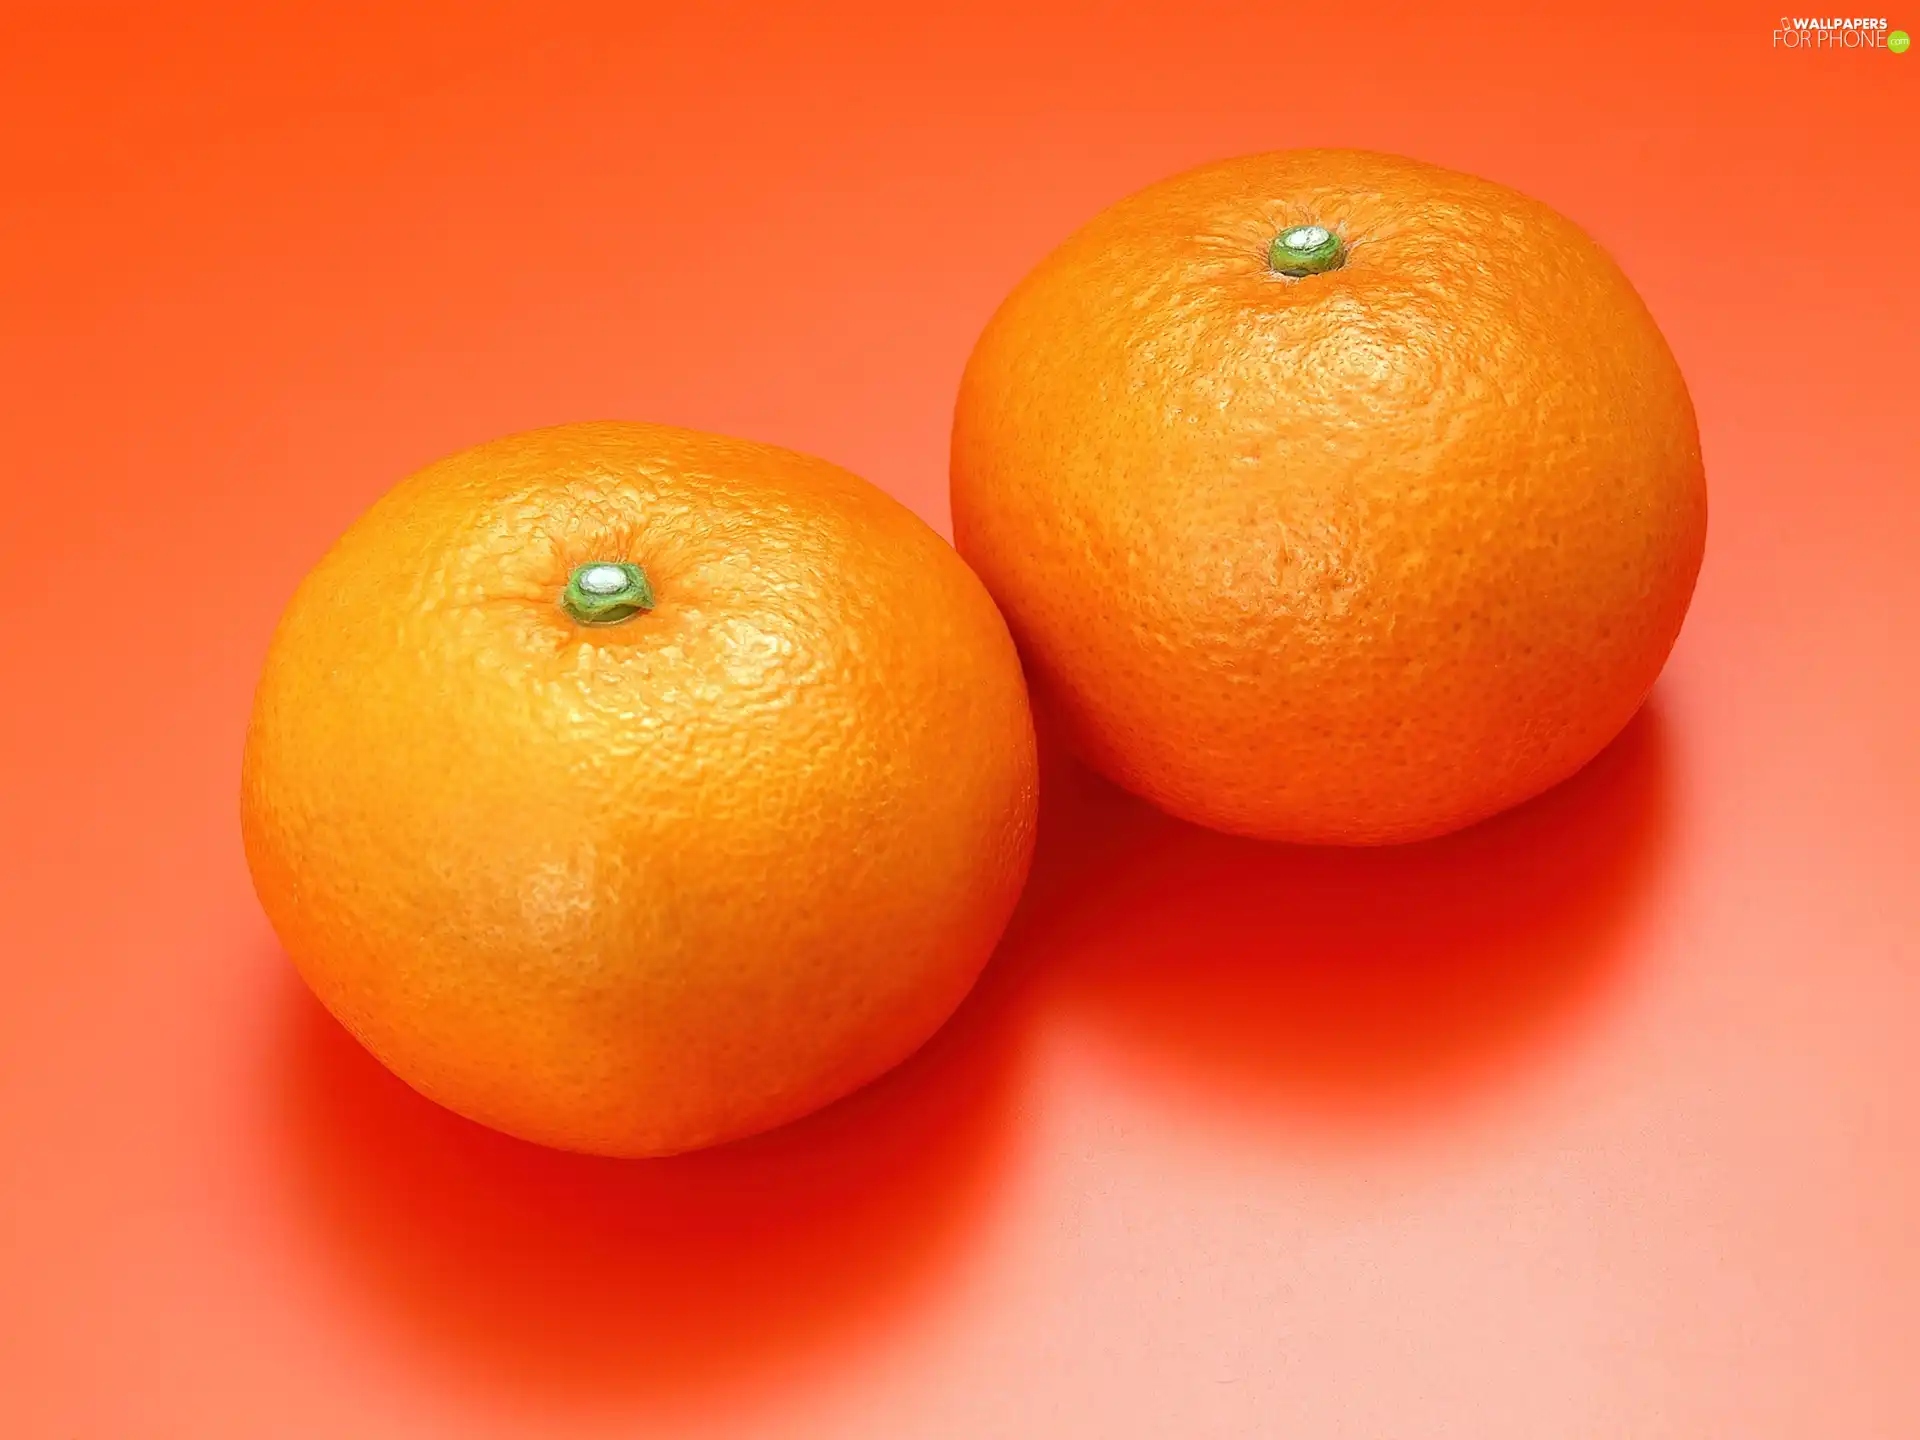 Two, orange